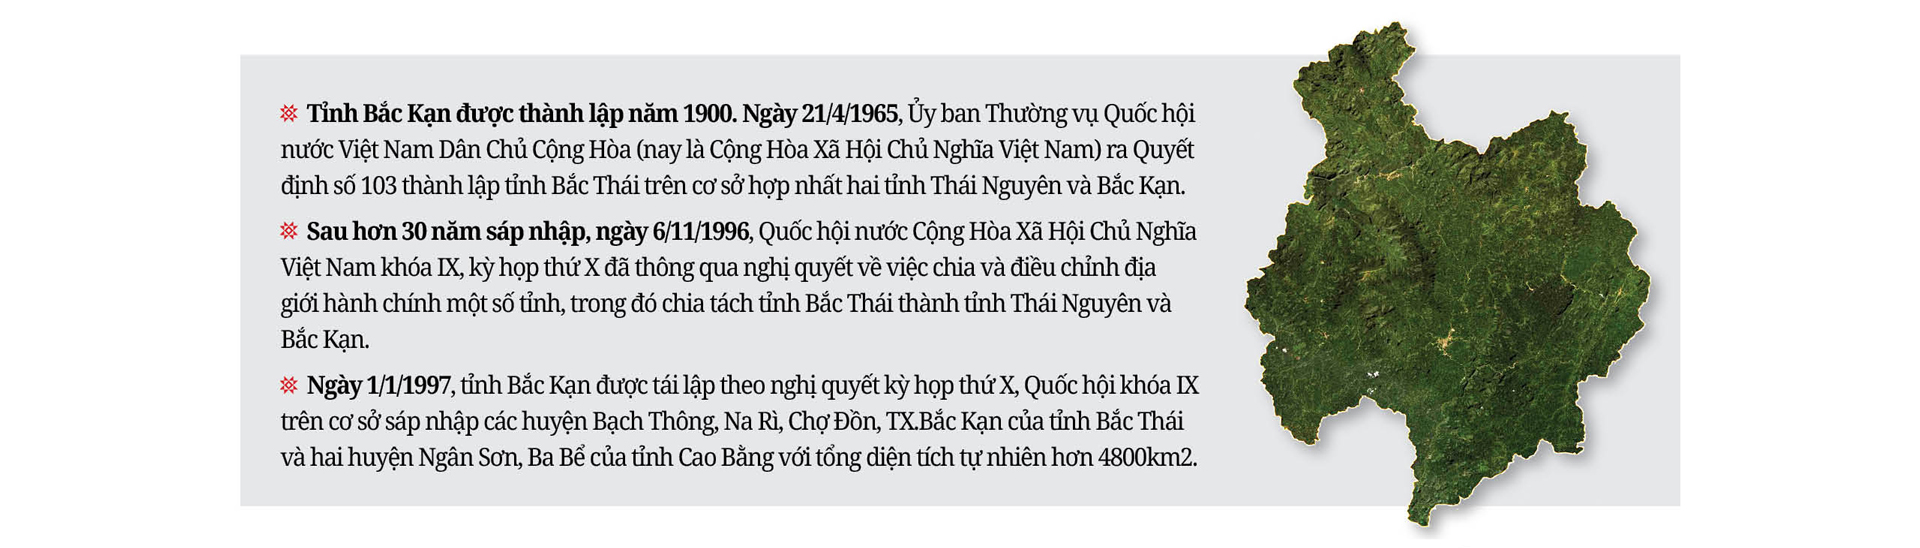 Chủ tịch UBND tỉnh Bắc Kạn Nguyễn Đăng Bình: Tôi không cảm thấy mình là người lạ khi đến Bắc Kạn - Ảnh 11.